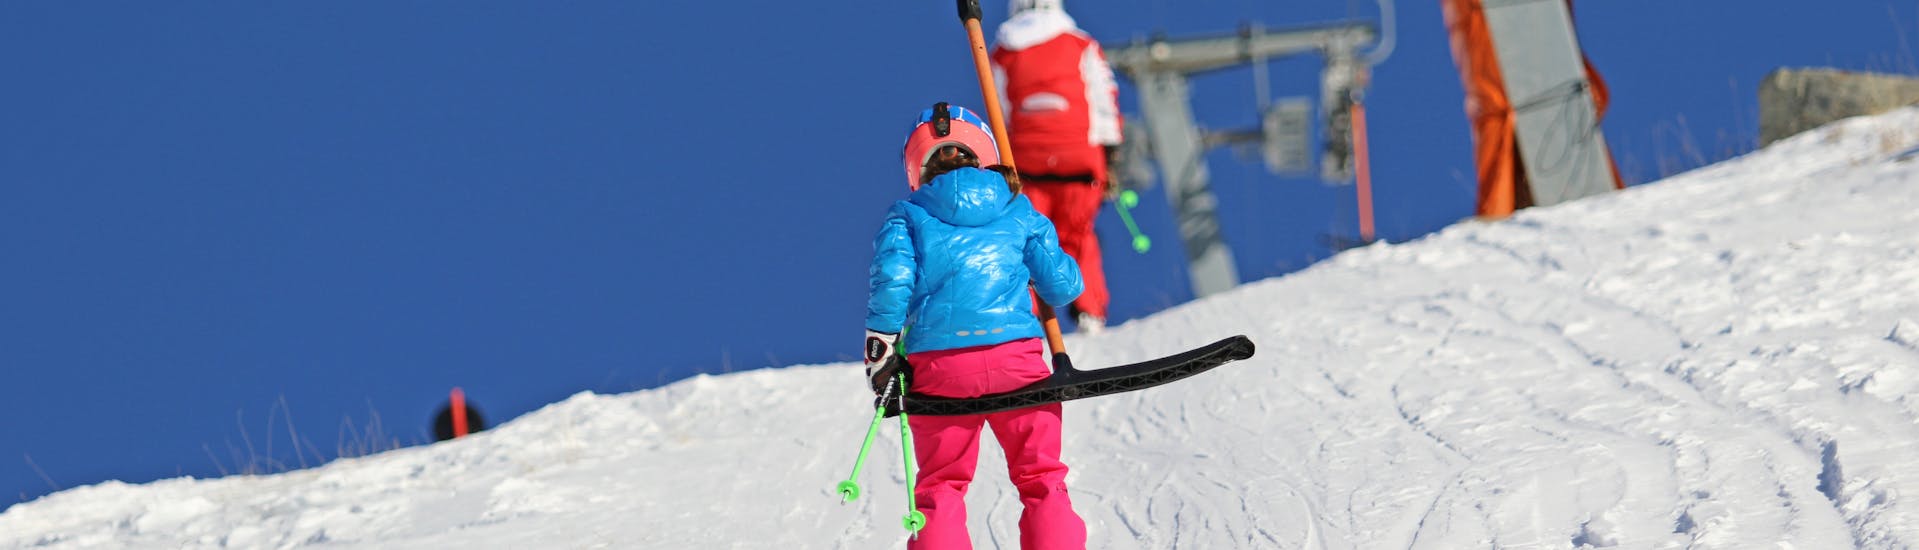 Cours de ski Enfants (4-7 ans) pour Débutants - Nauders.